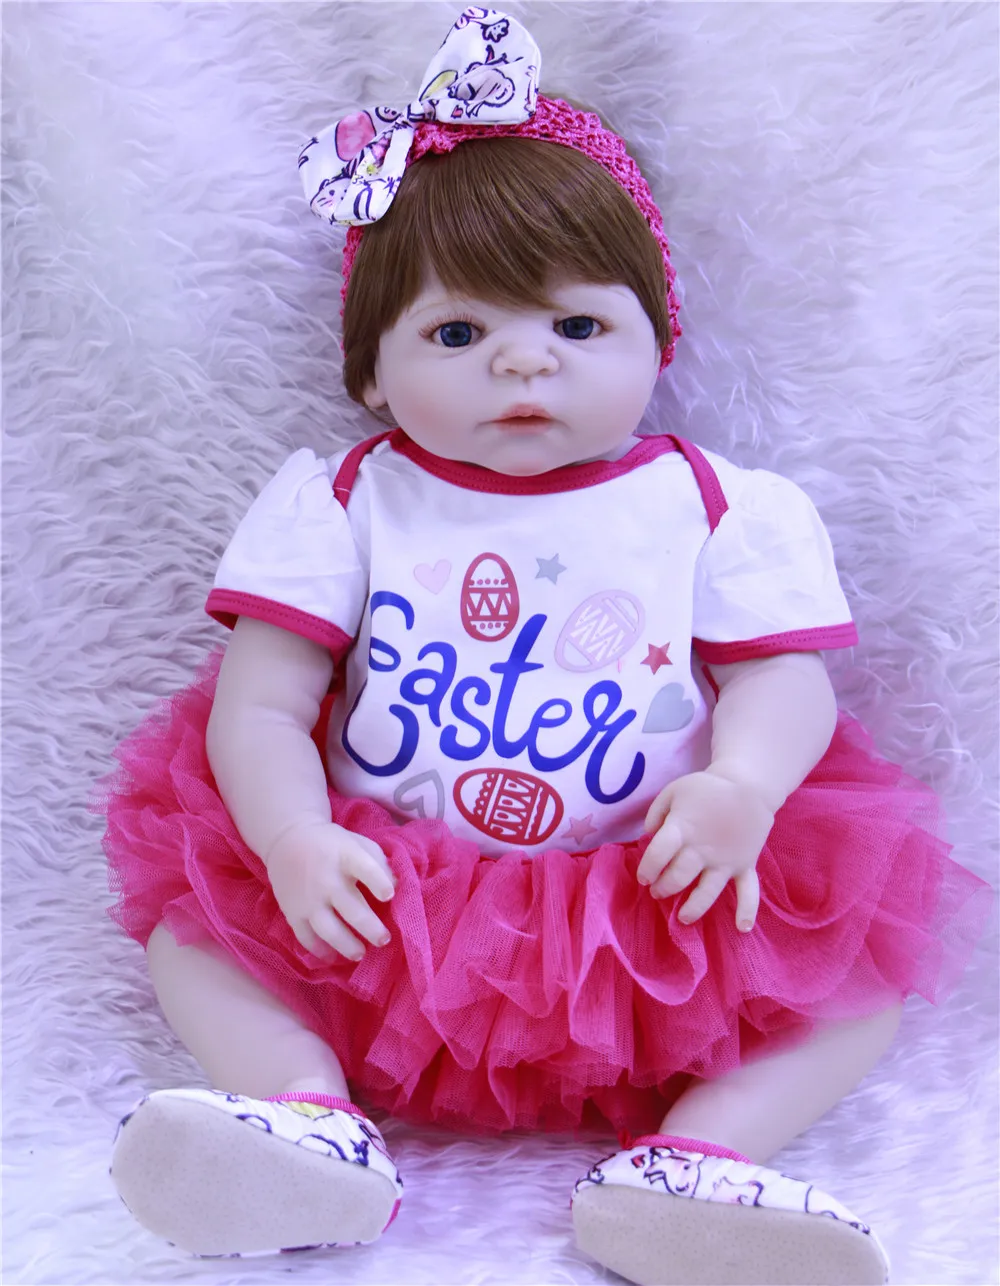 

Полностью силиконовые куклы Новорожденные, 22 дюйма, NPK, бренд bebes reborn, мягкие на ощупь, настоящие, новый цвет волос, куклы reborn